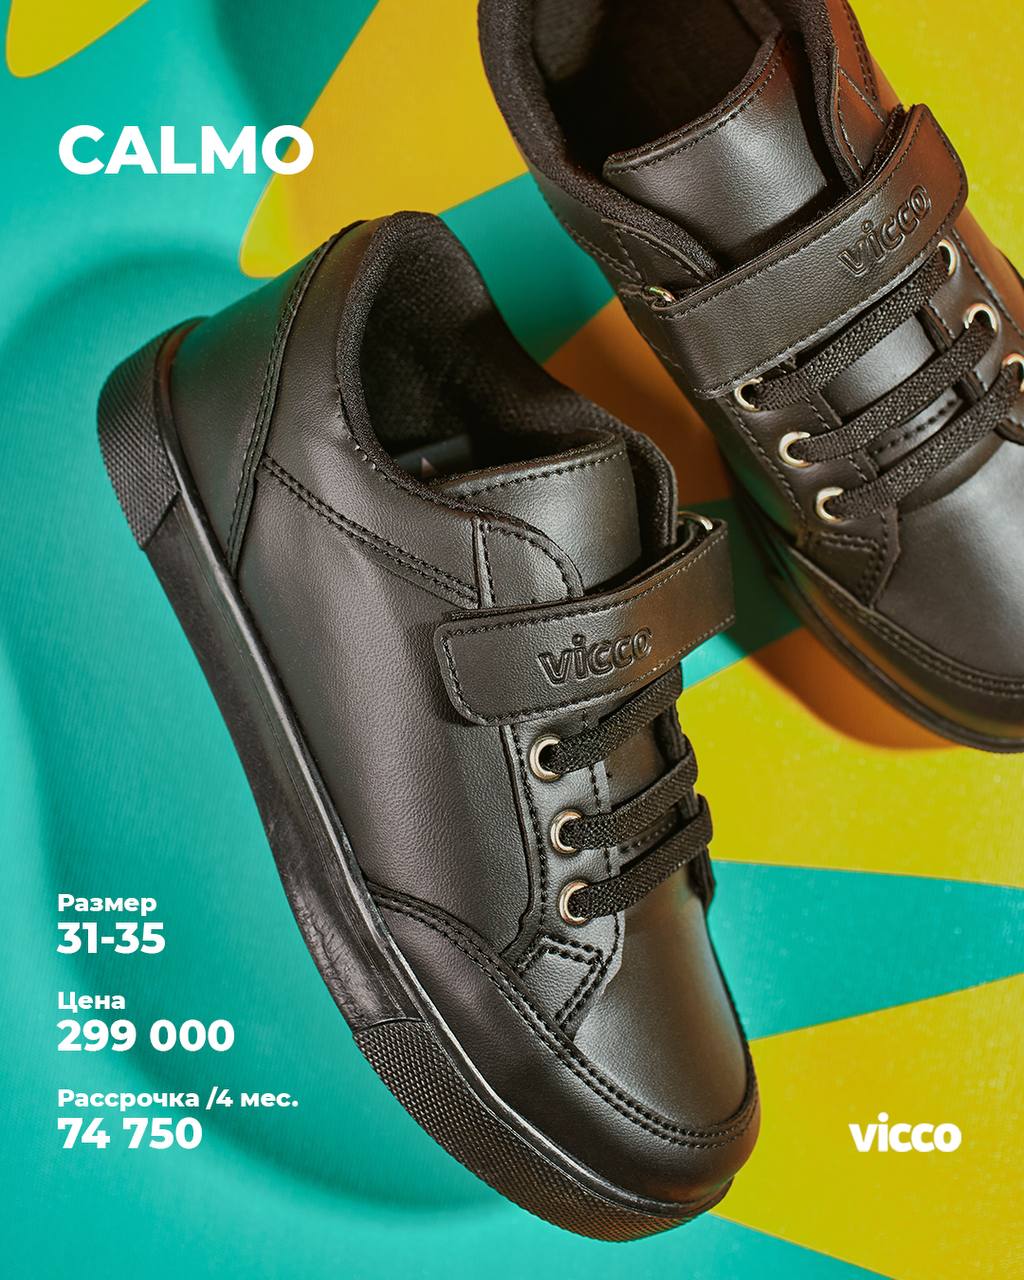 Купить школьную обувь - Коллекция Calmo